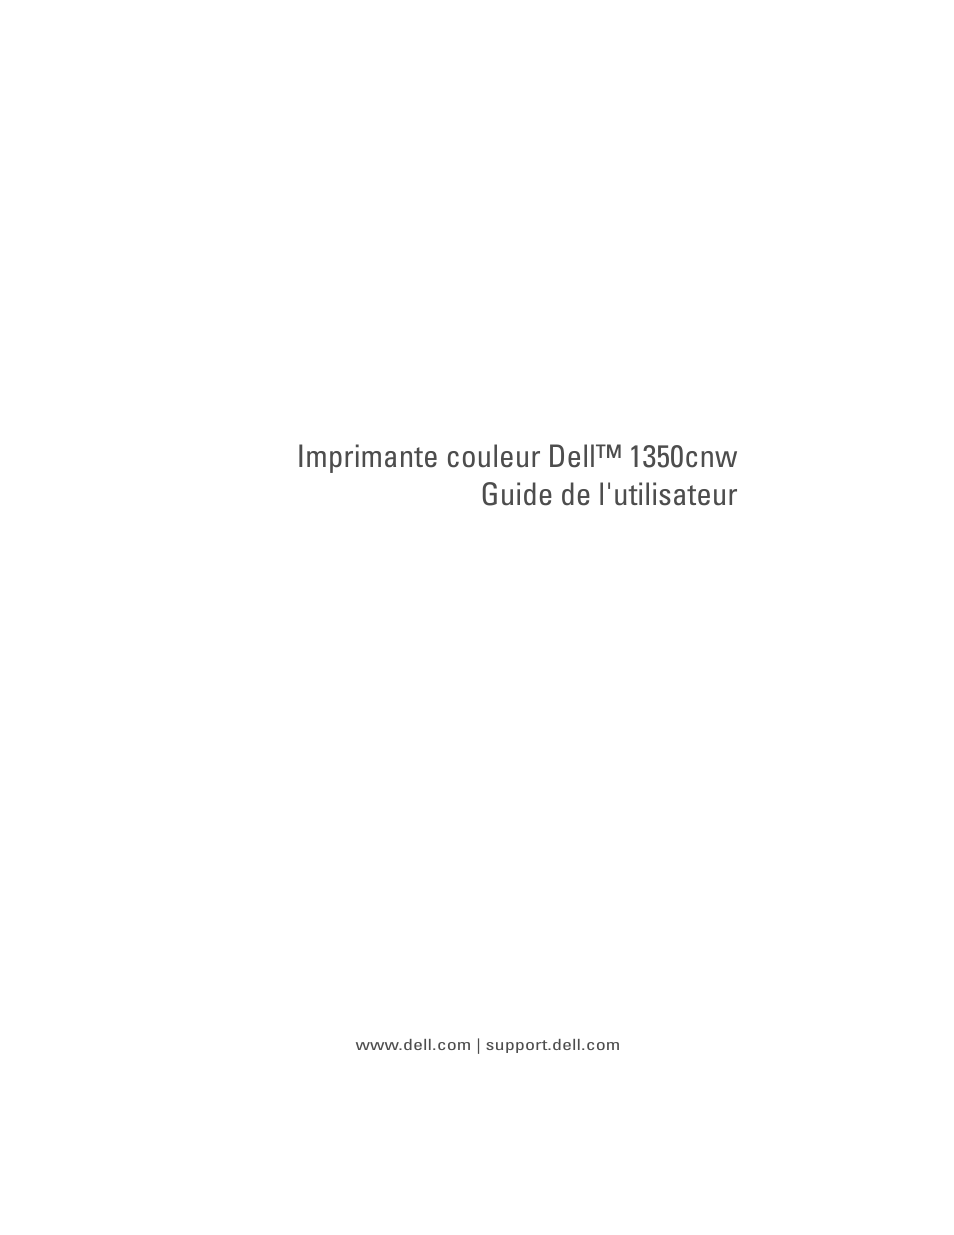 Dell 1350cnw Color Laser Printer Manuel d'utilisation | Pages: 348